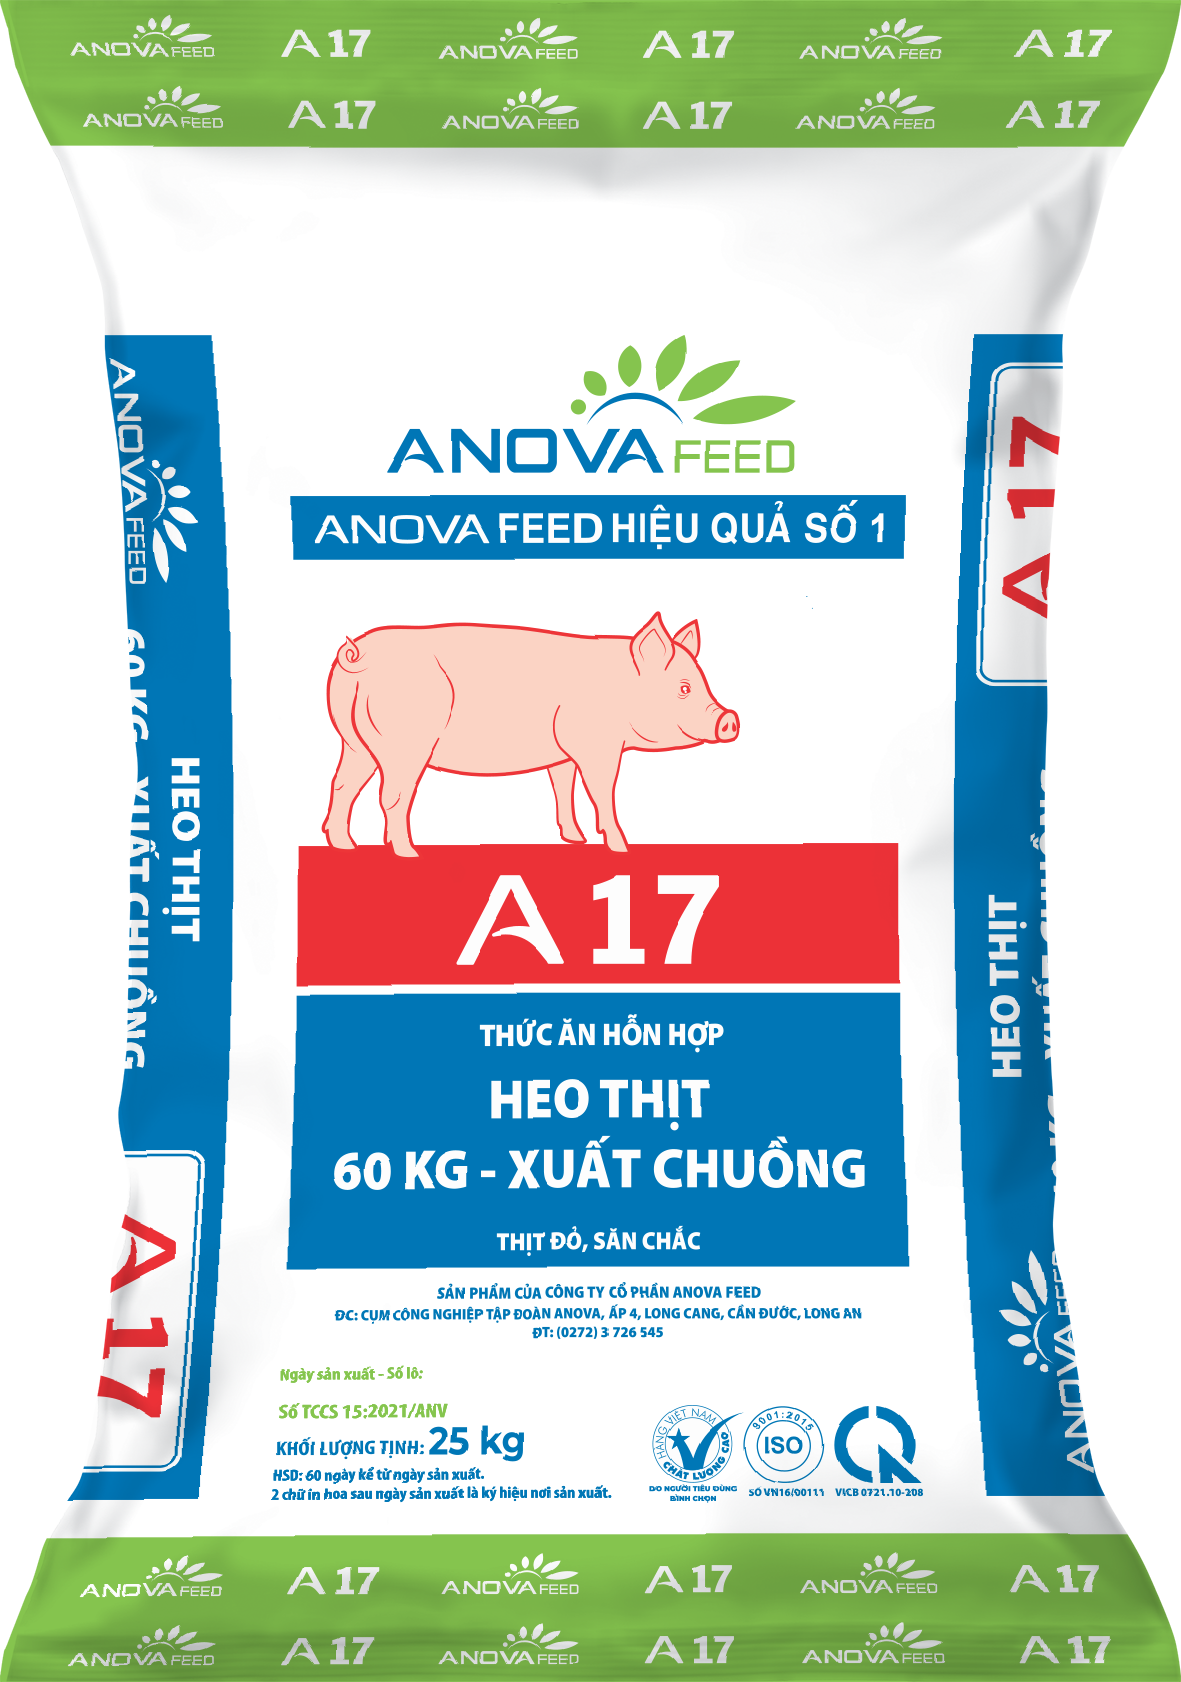 Fattening feed (60kg - market)